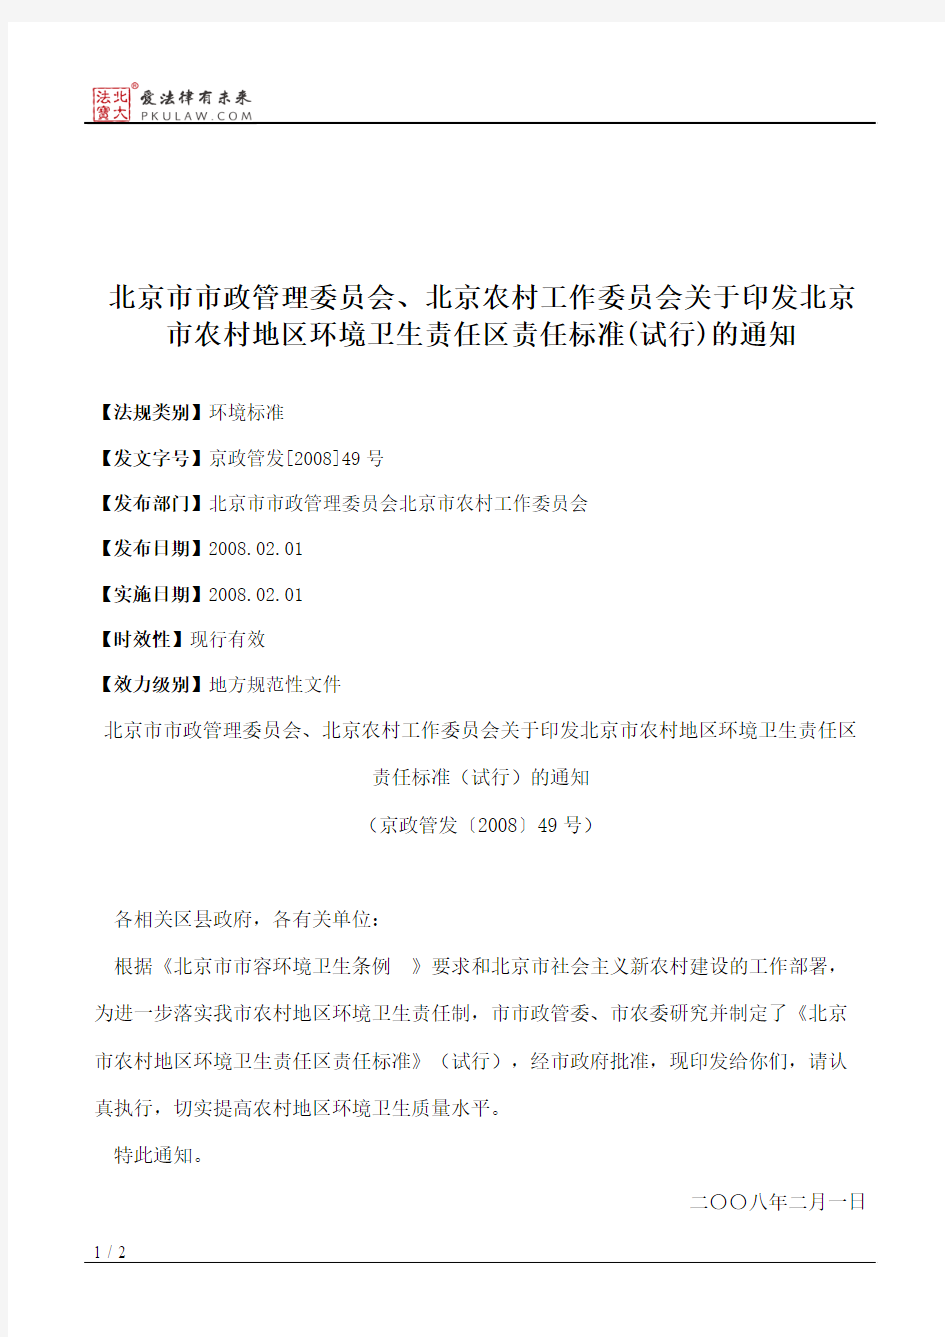 北京市市政管理委员会、北京农村工作委员会关于印发北京市农村地